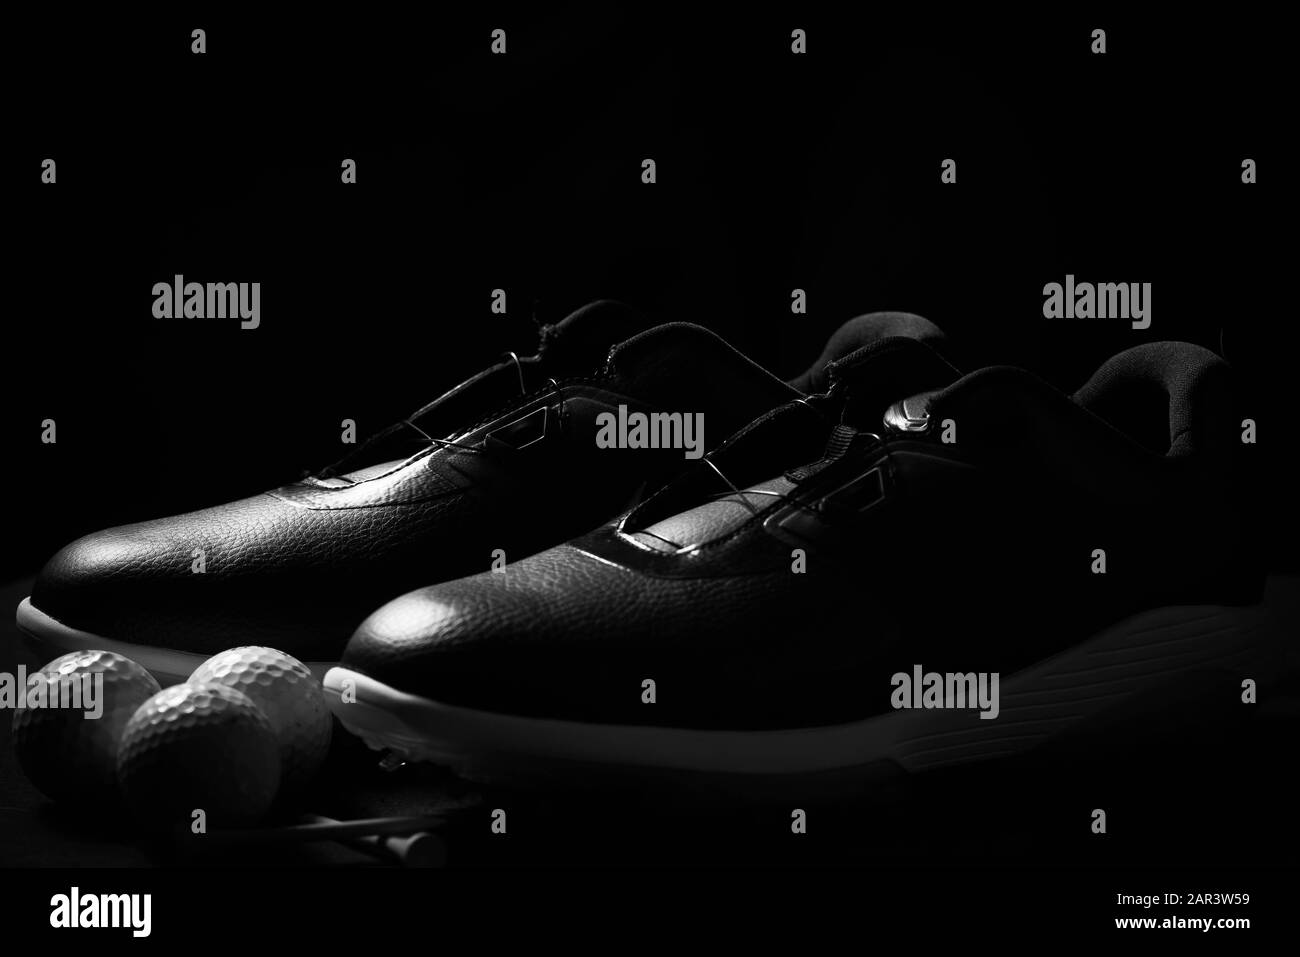 Chaussures de golf, balles et tee isolés sur fond noir. Banque D'Images